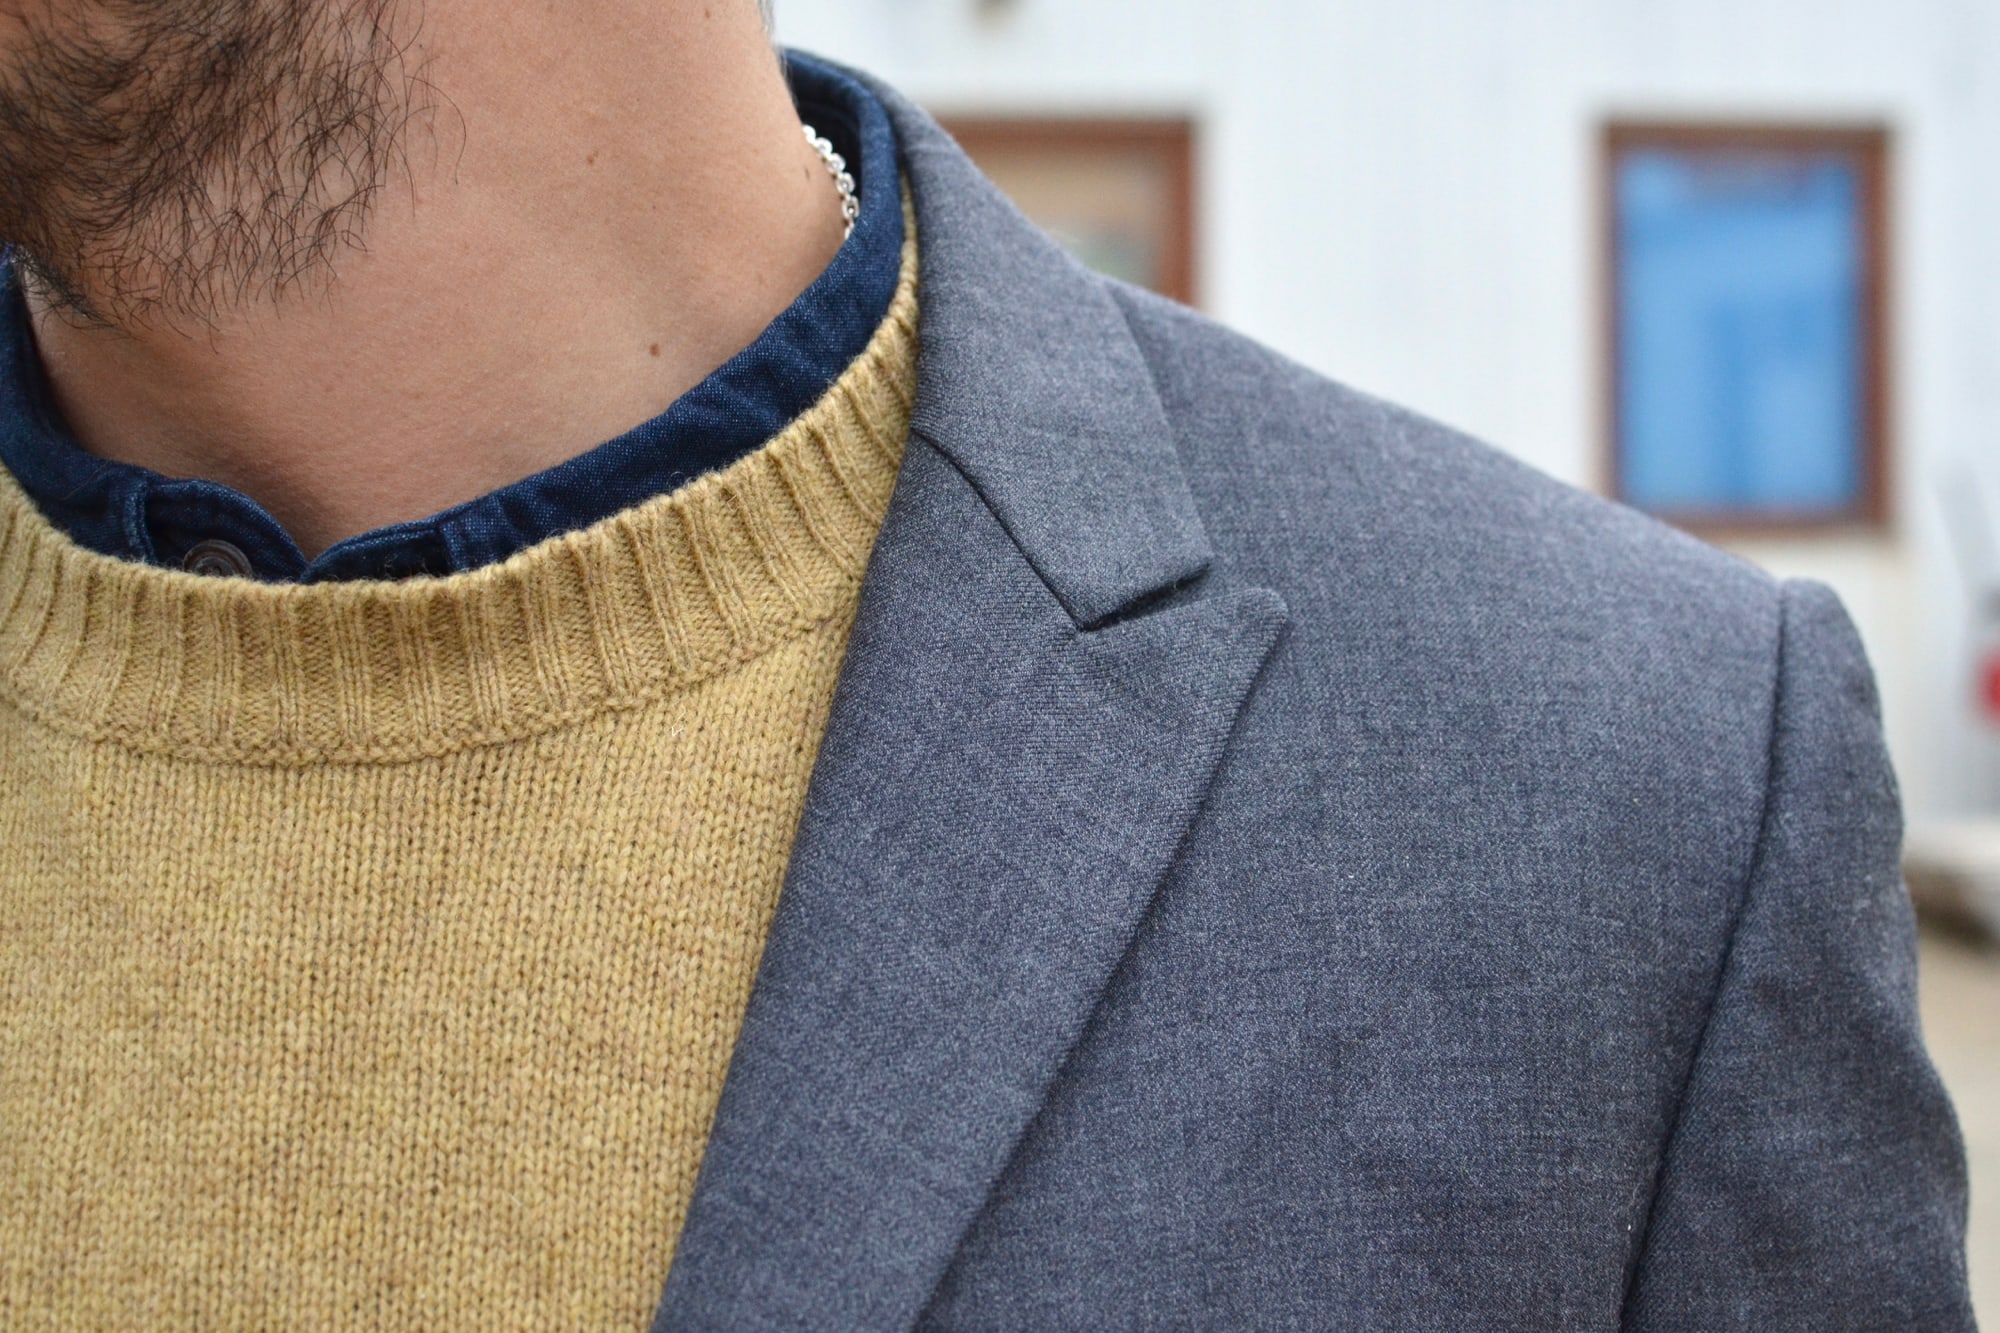 style casual chic et détails de matières, couleurs et textures avec ce blazer en laine grise, ce pull shetland jaune et une touche de coton indigo